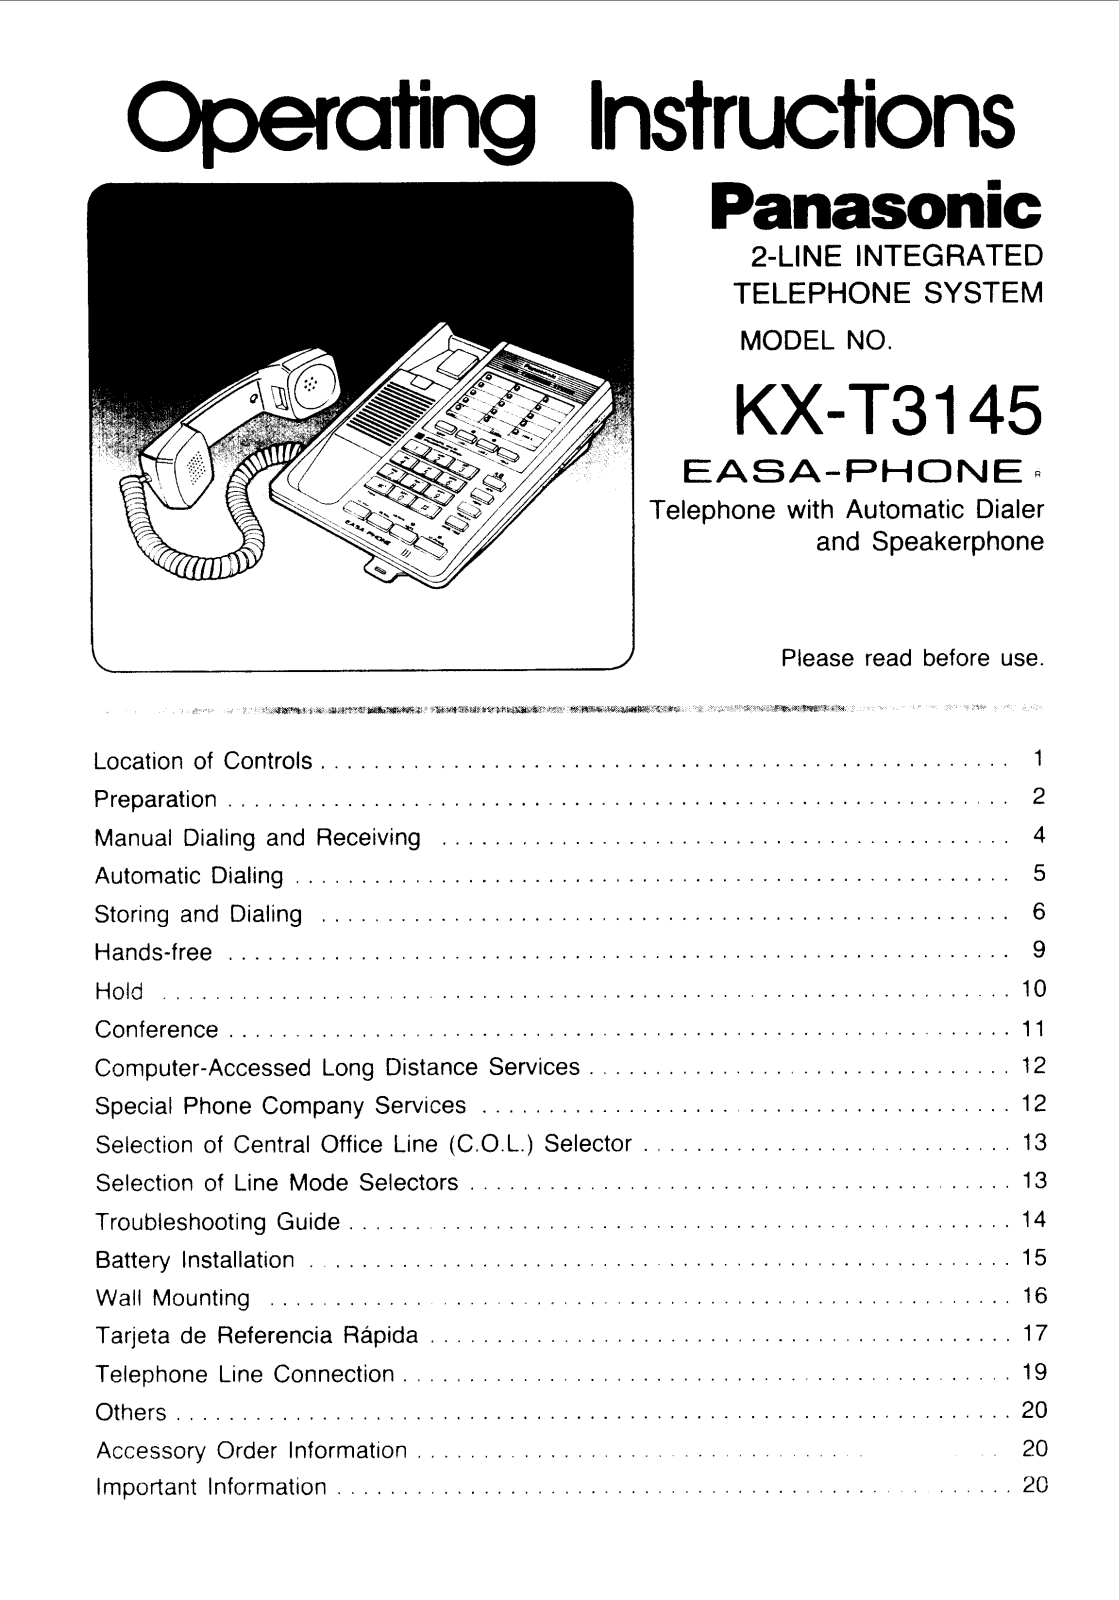 Panasonic kx-t3145 Operation Manual